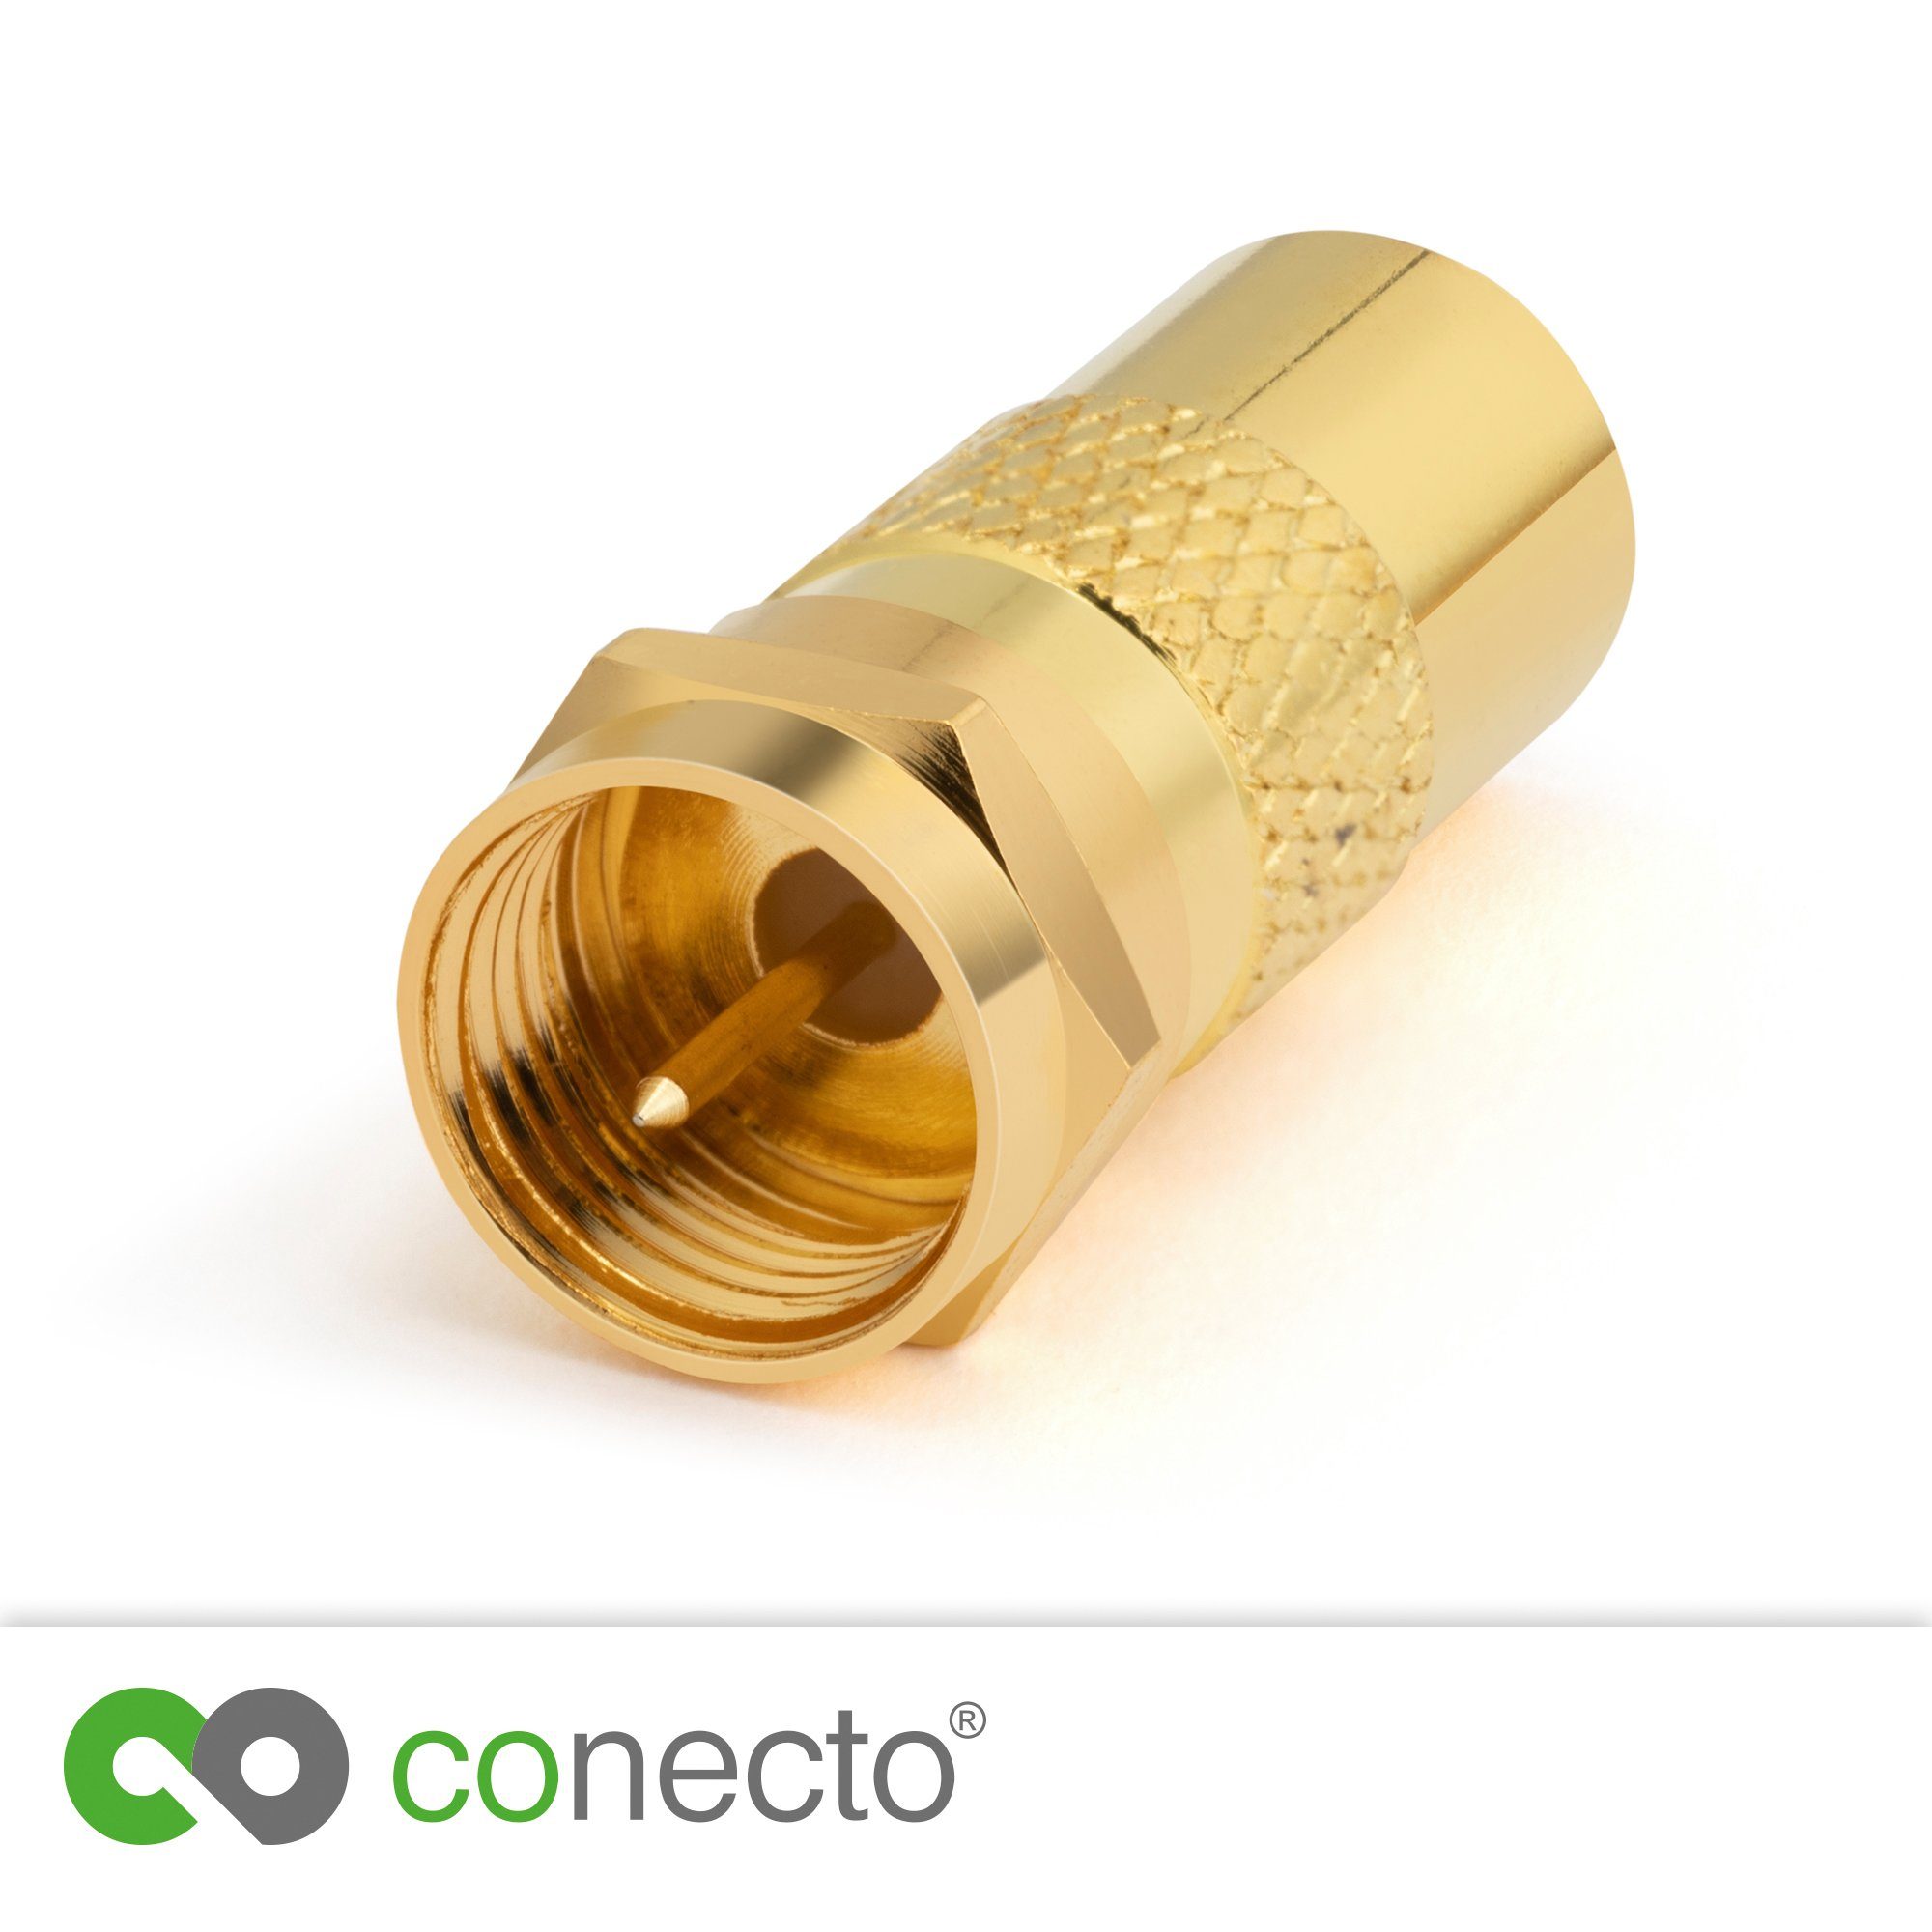 conecto Adapter auf F-Stecker IEC-Buchse, conecto Antennen-Adapter, Verbin SAT-Kabel zum